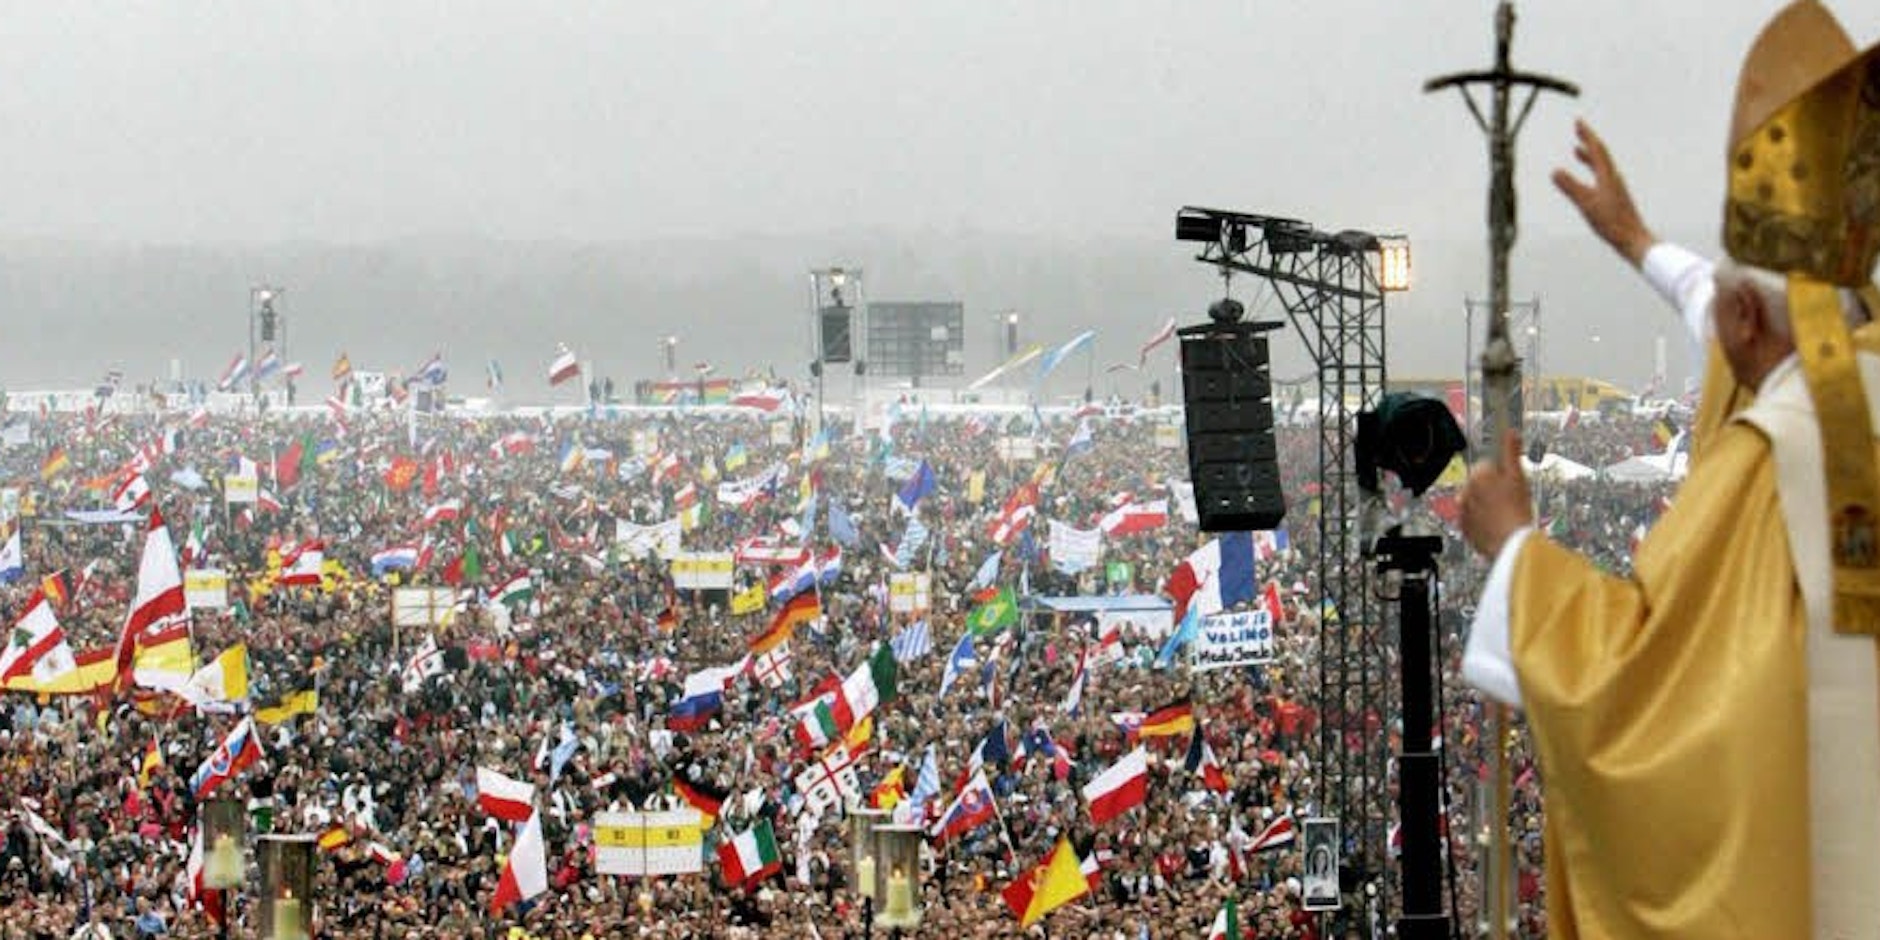 Die größte Messe, die je in Deutschland gefeiert wurde: 1,1 Millionen Menschen kamen auf das Marienfeld, um Papst Benedikt XVI. zu erleben. Viele hatten die Nacht dort verbracht.